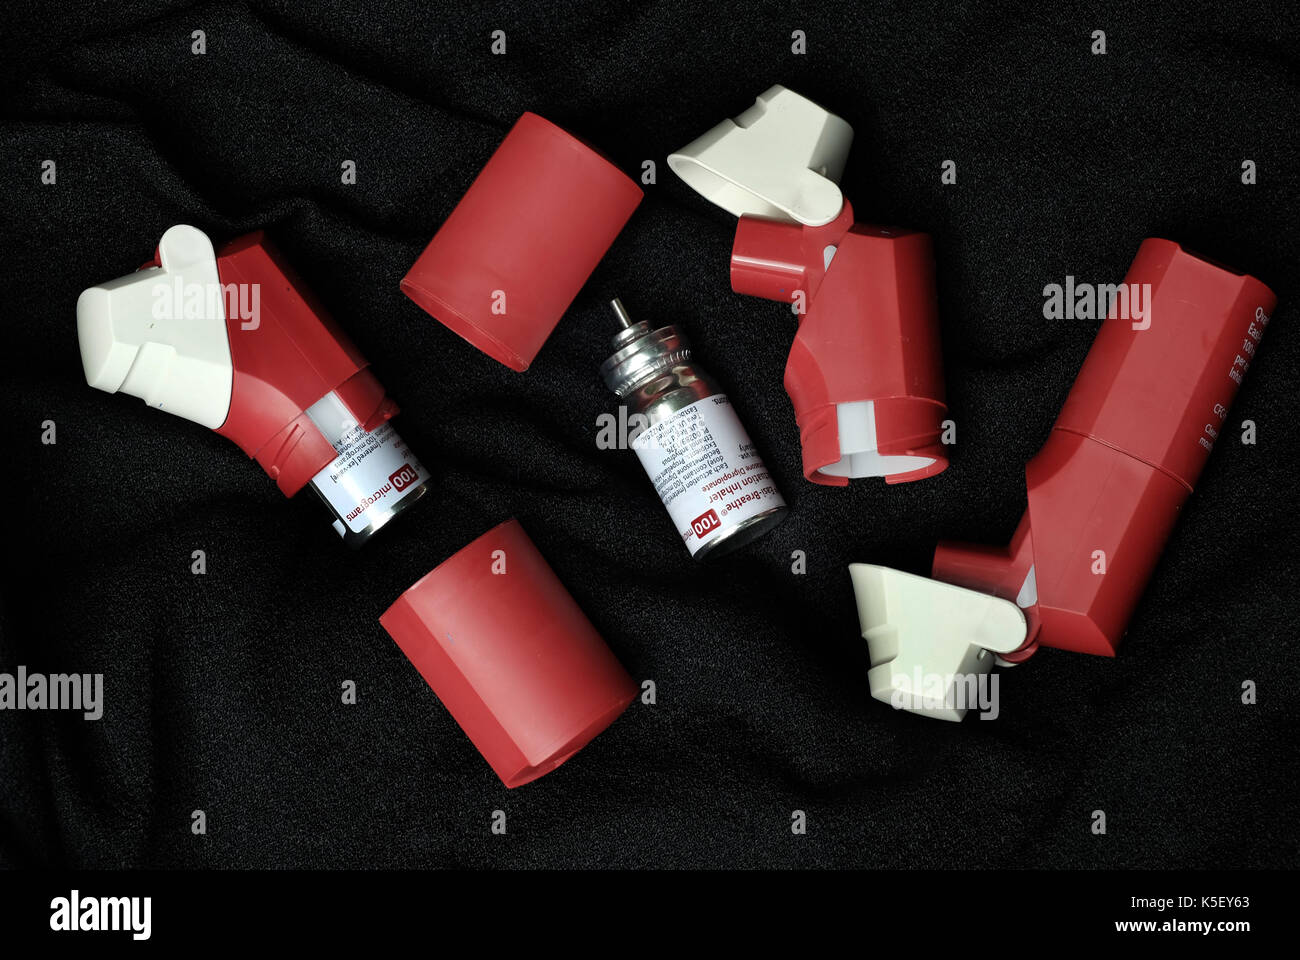 Atmung Hilfe medizinische Geräte für Asthma leidet. Stockfoto